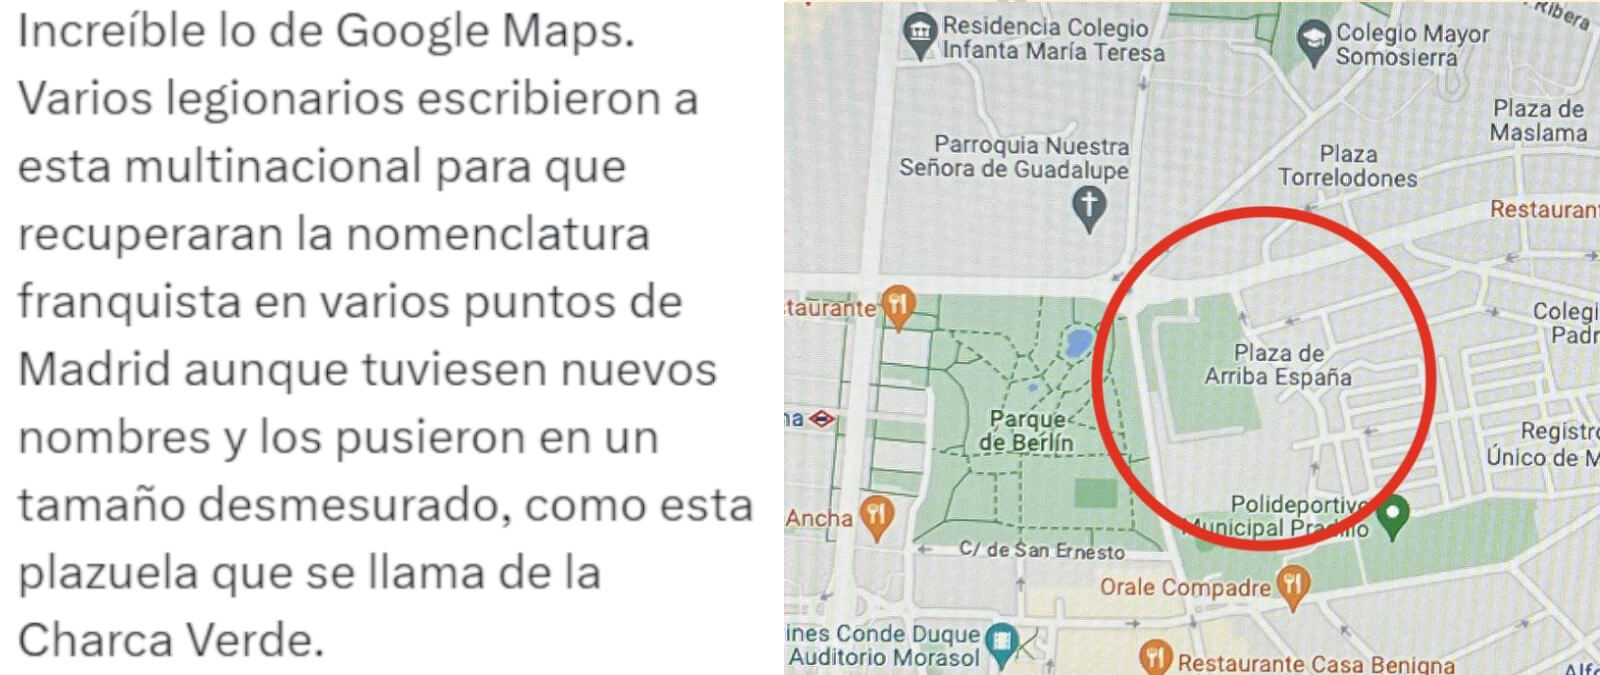 Los cambios de nombre de direcciones en Google Maps y por qué la Plaza de la Charca Verde de Madrid se mostraba como Plaza de Arriba España